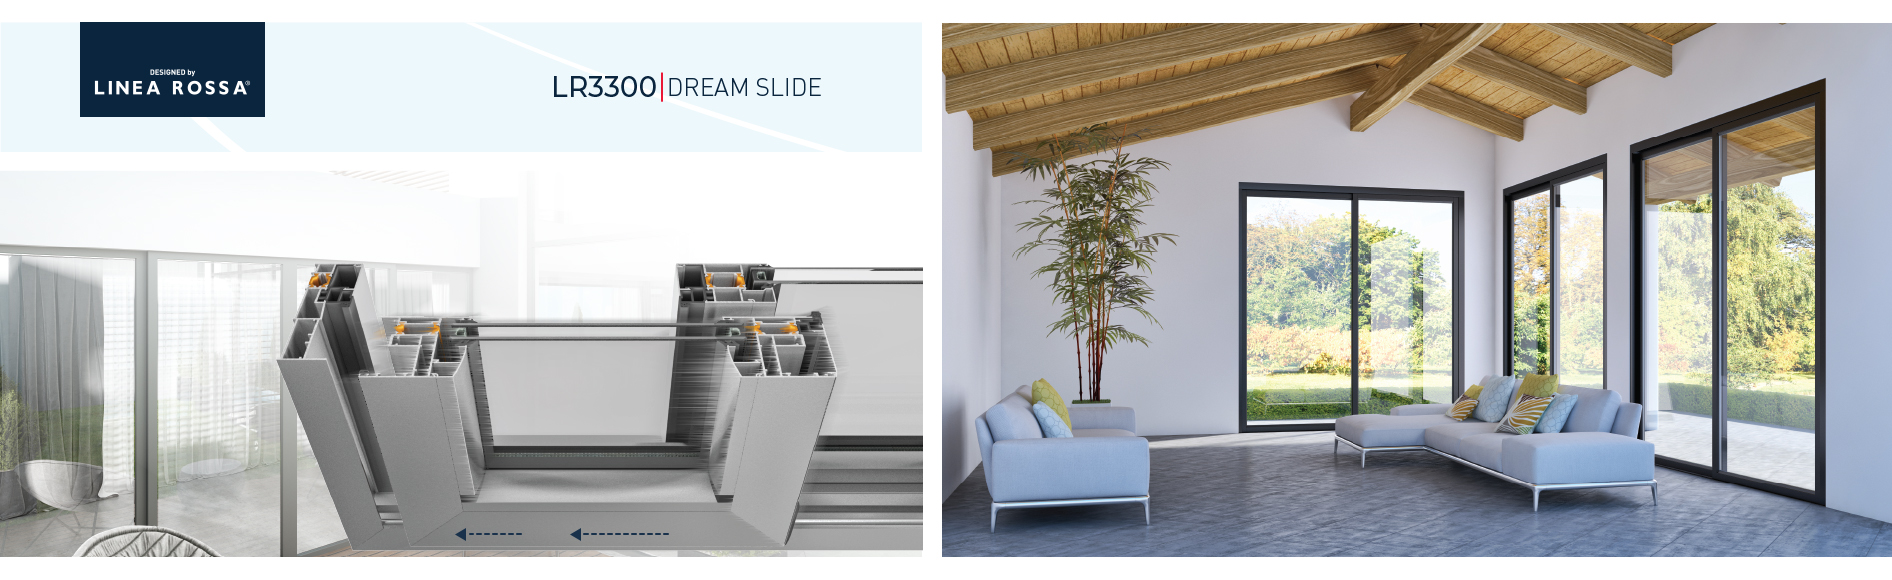 LR3300-Dream Slide